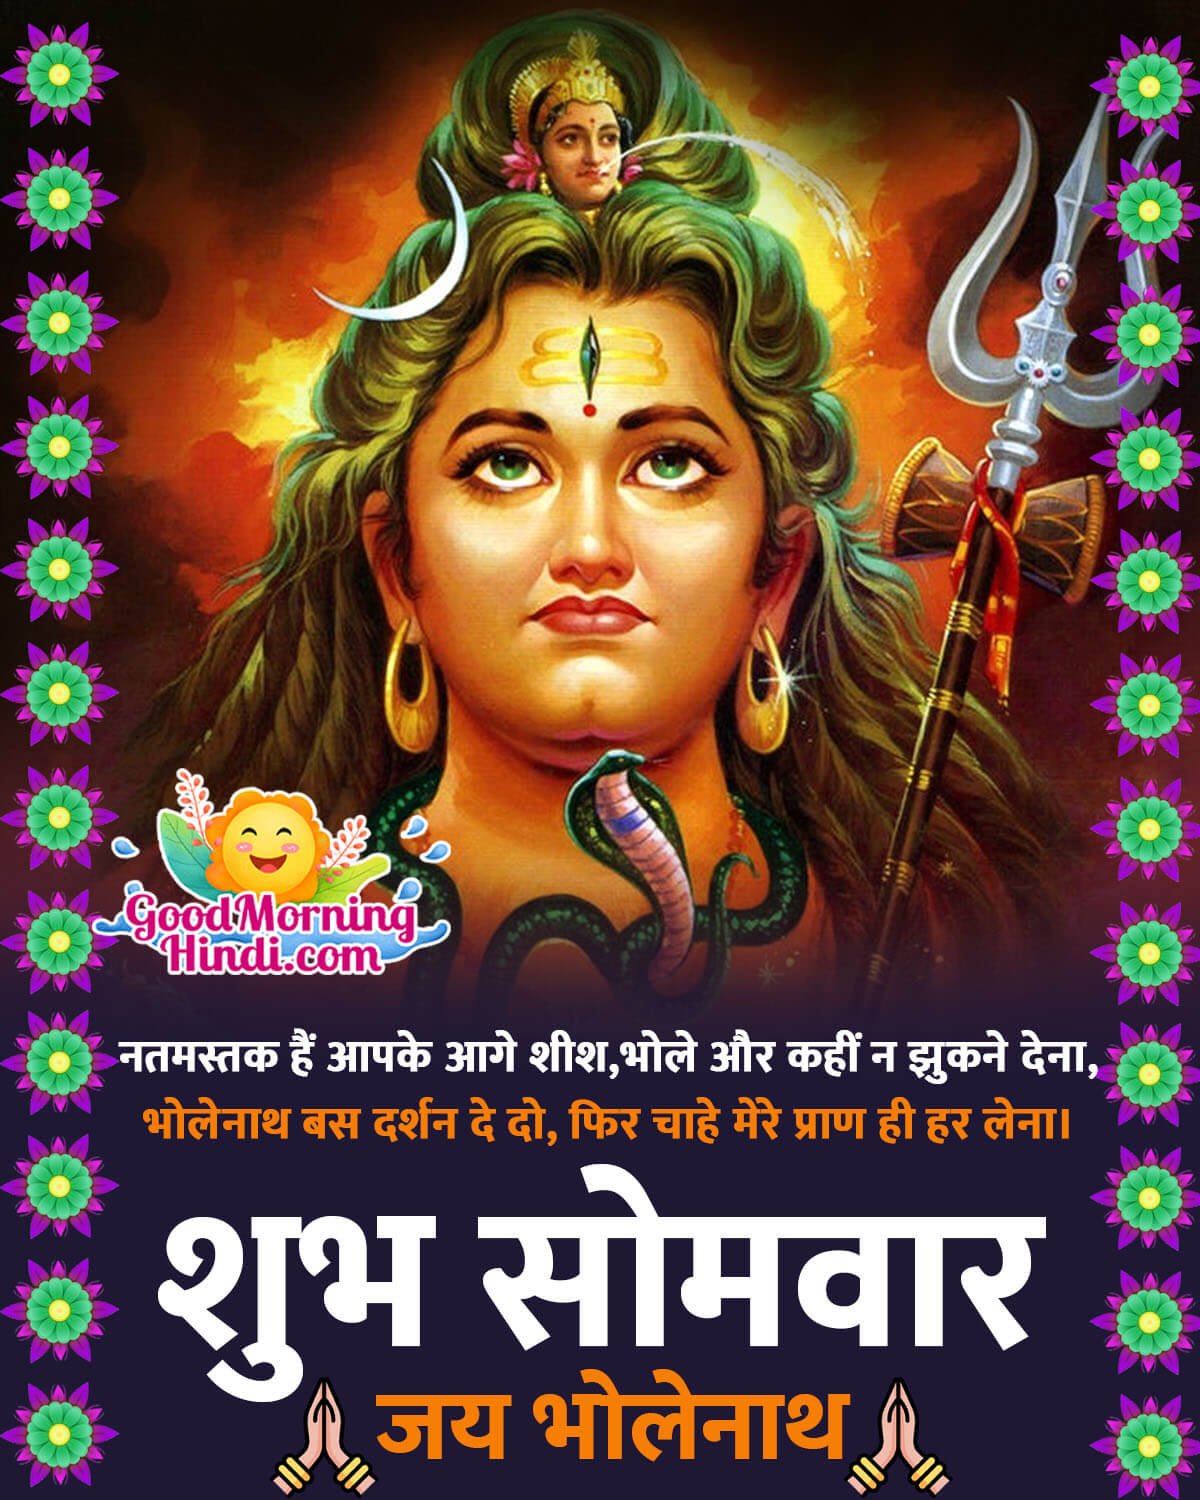 Lord Shiva Monday Morning Shayari Status